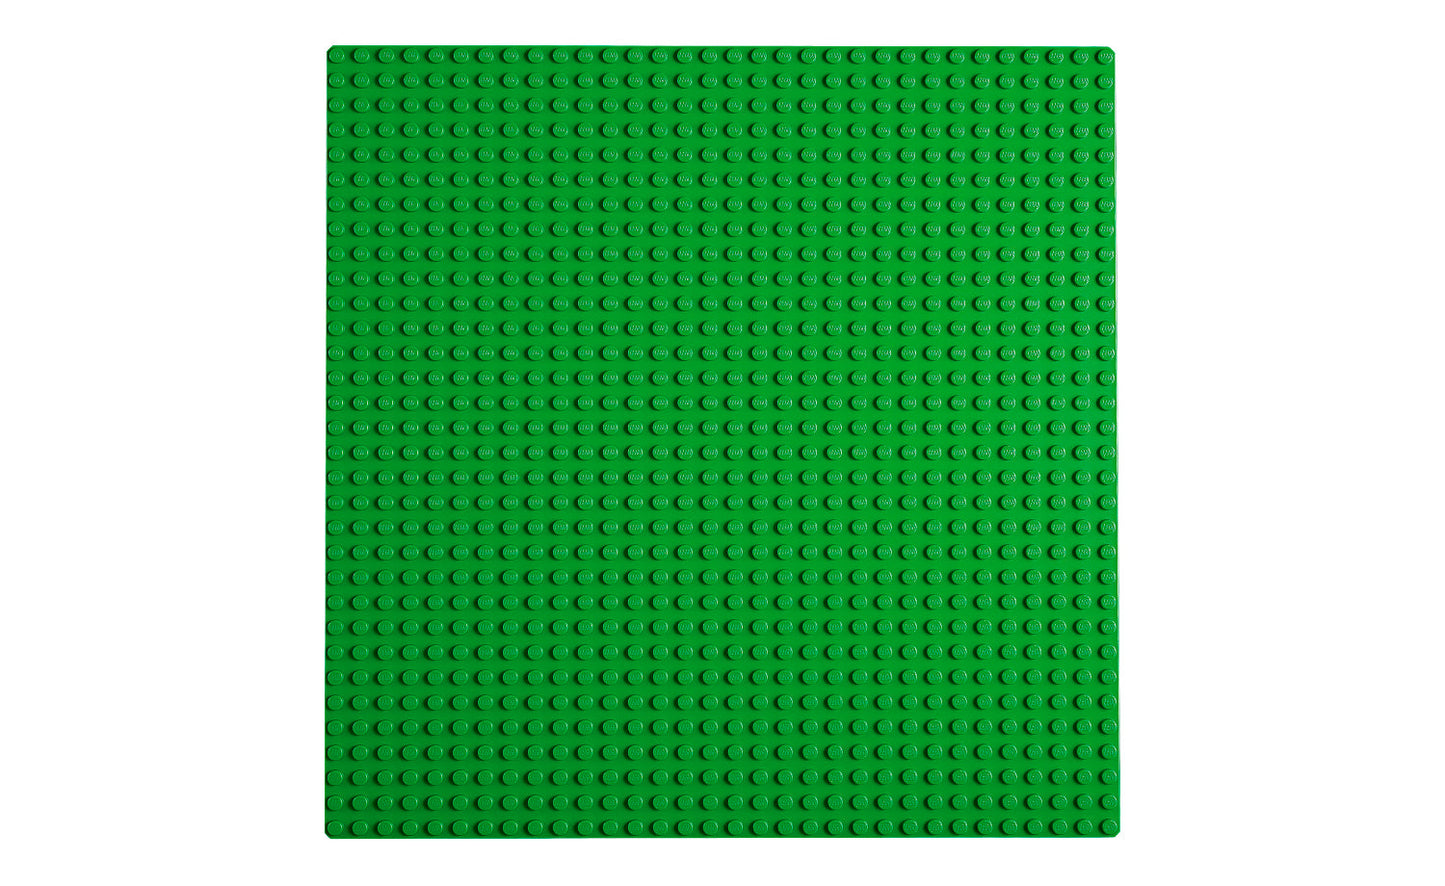 Lego Classic Green Baseplate - 11023